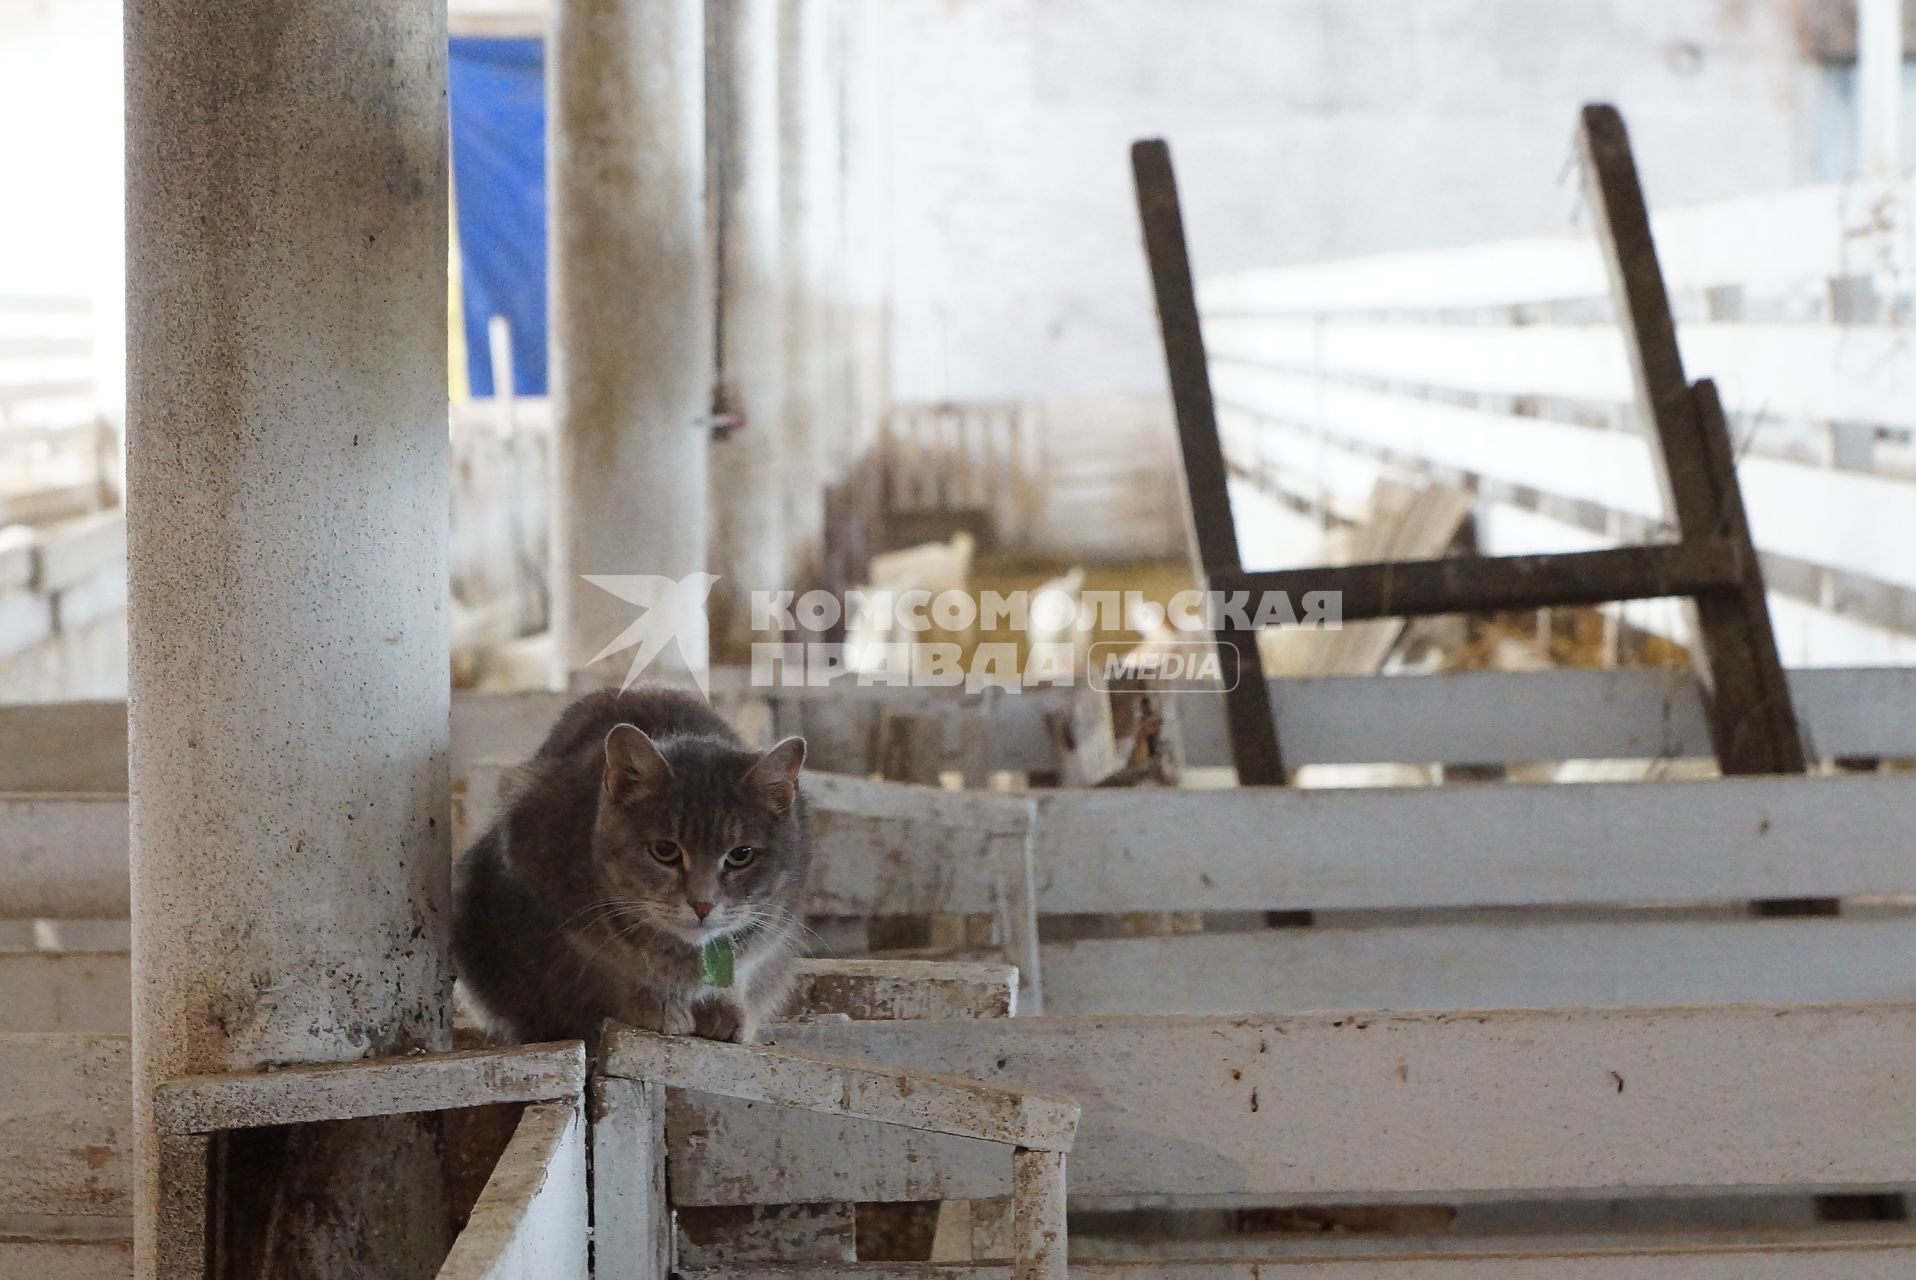 кошка у загона для козлят, на сельхозпредприятии по выращиванию коз и производству козьего молока – научно-производственный кооператив «Ачитский»